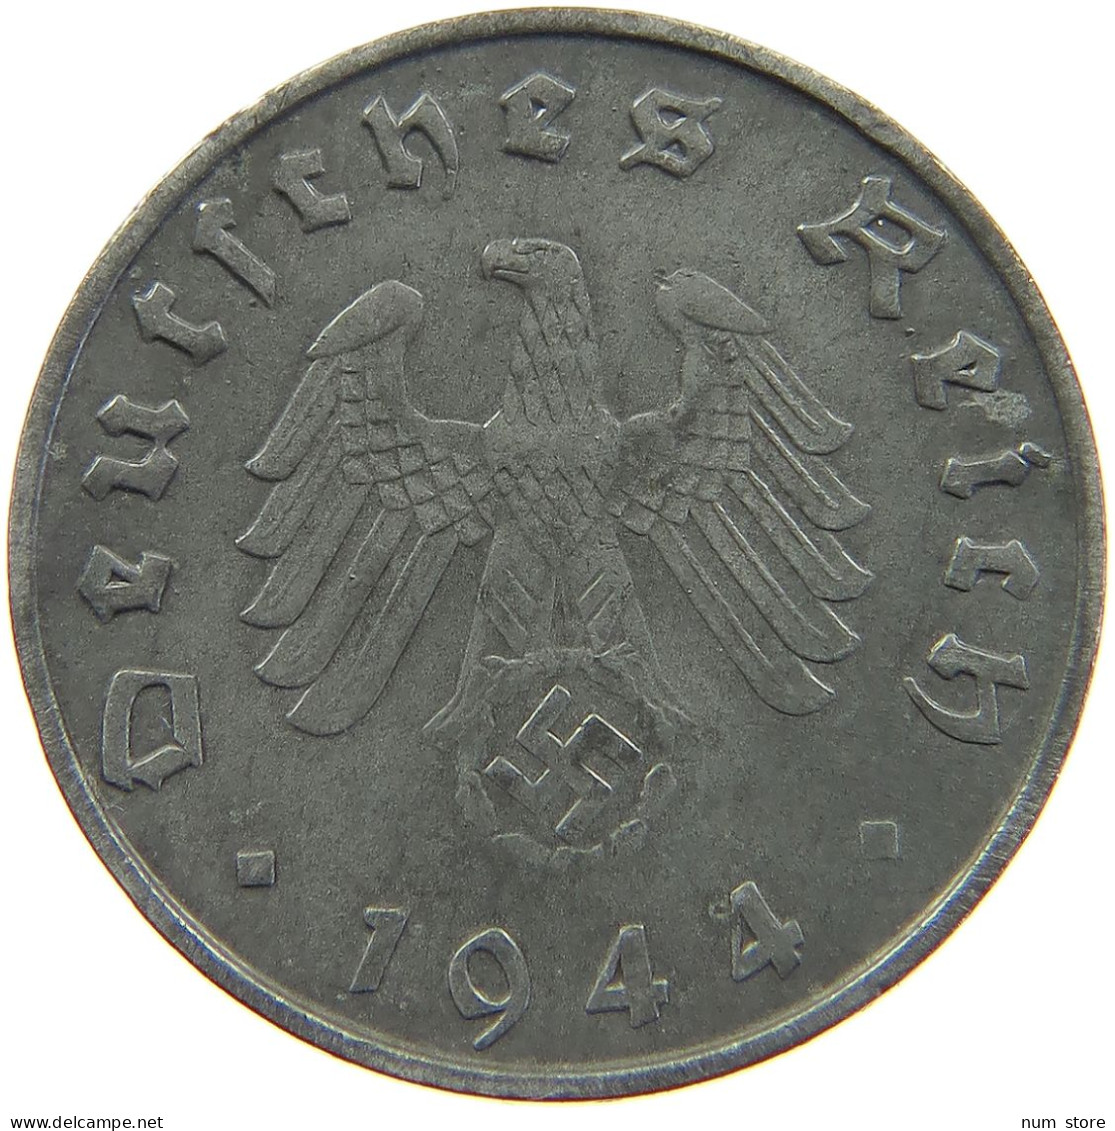 DRITTES REICH 10 PFENNIG 1944 G  #MA 102689 - 10 Reichspfennig